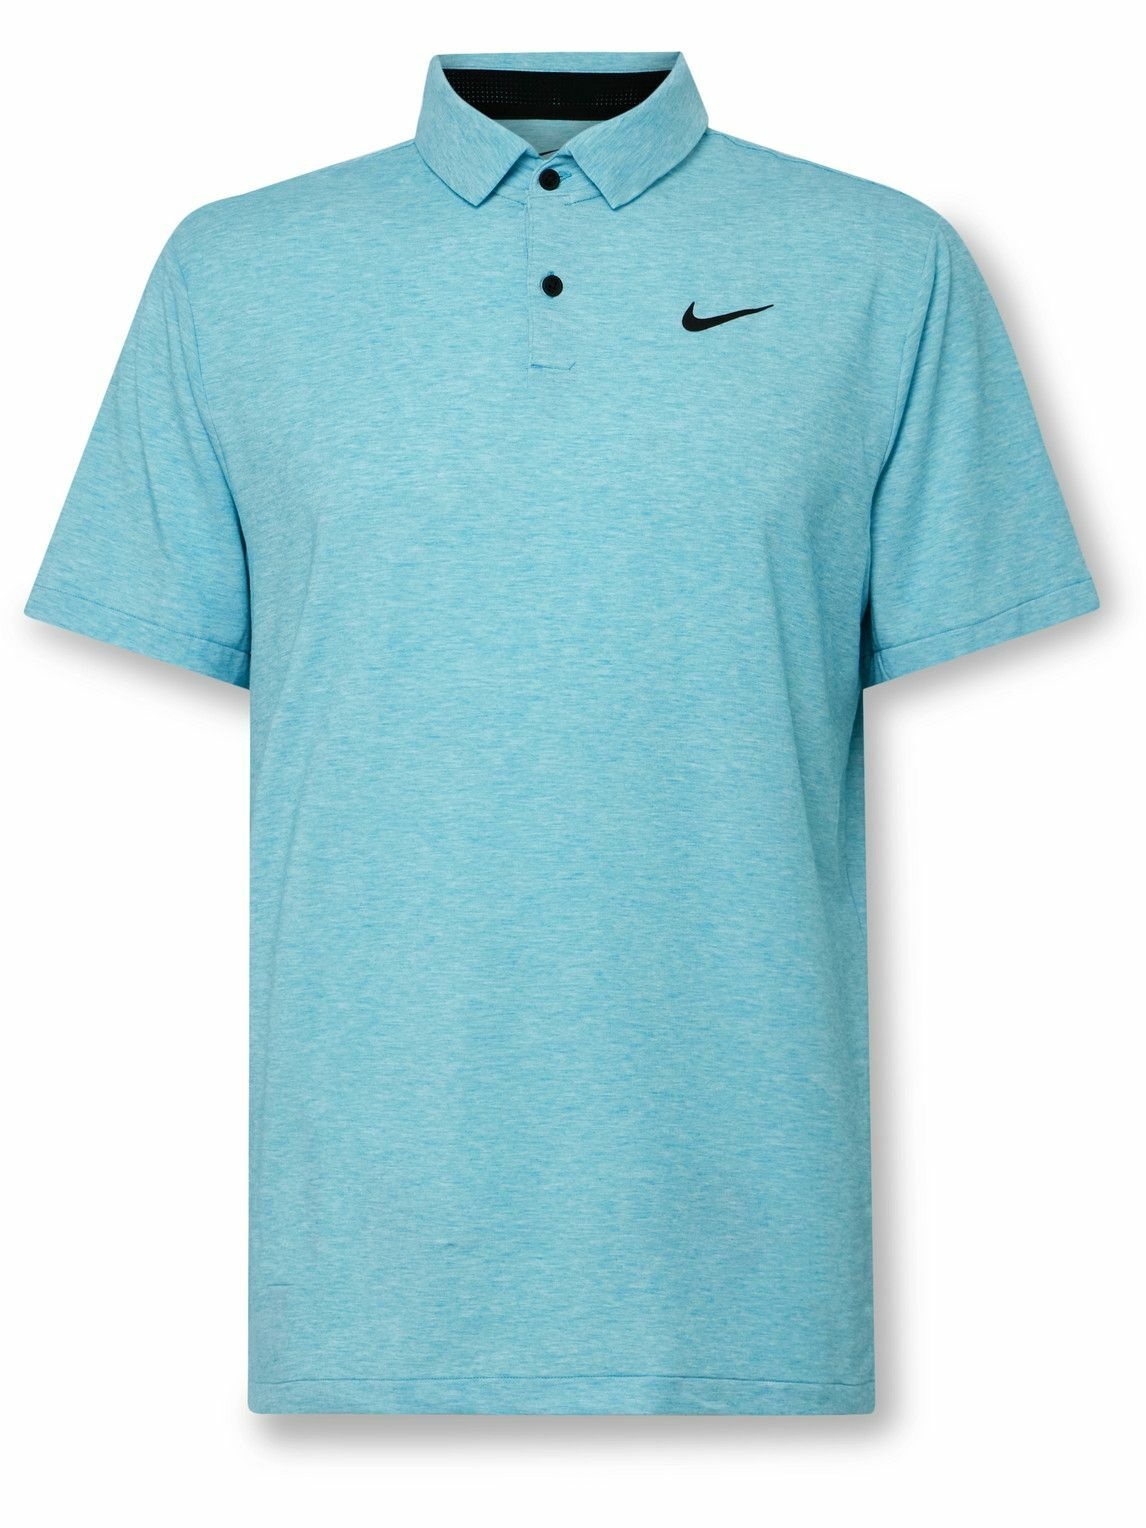 Nike Golf - Tour Dri-FIT Golf Polo Shirt - Blue Nike Golf